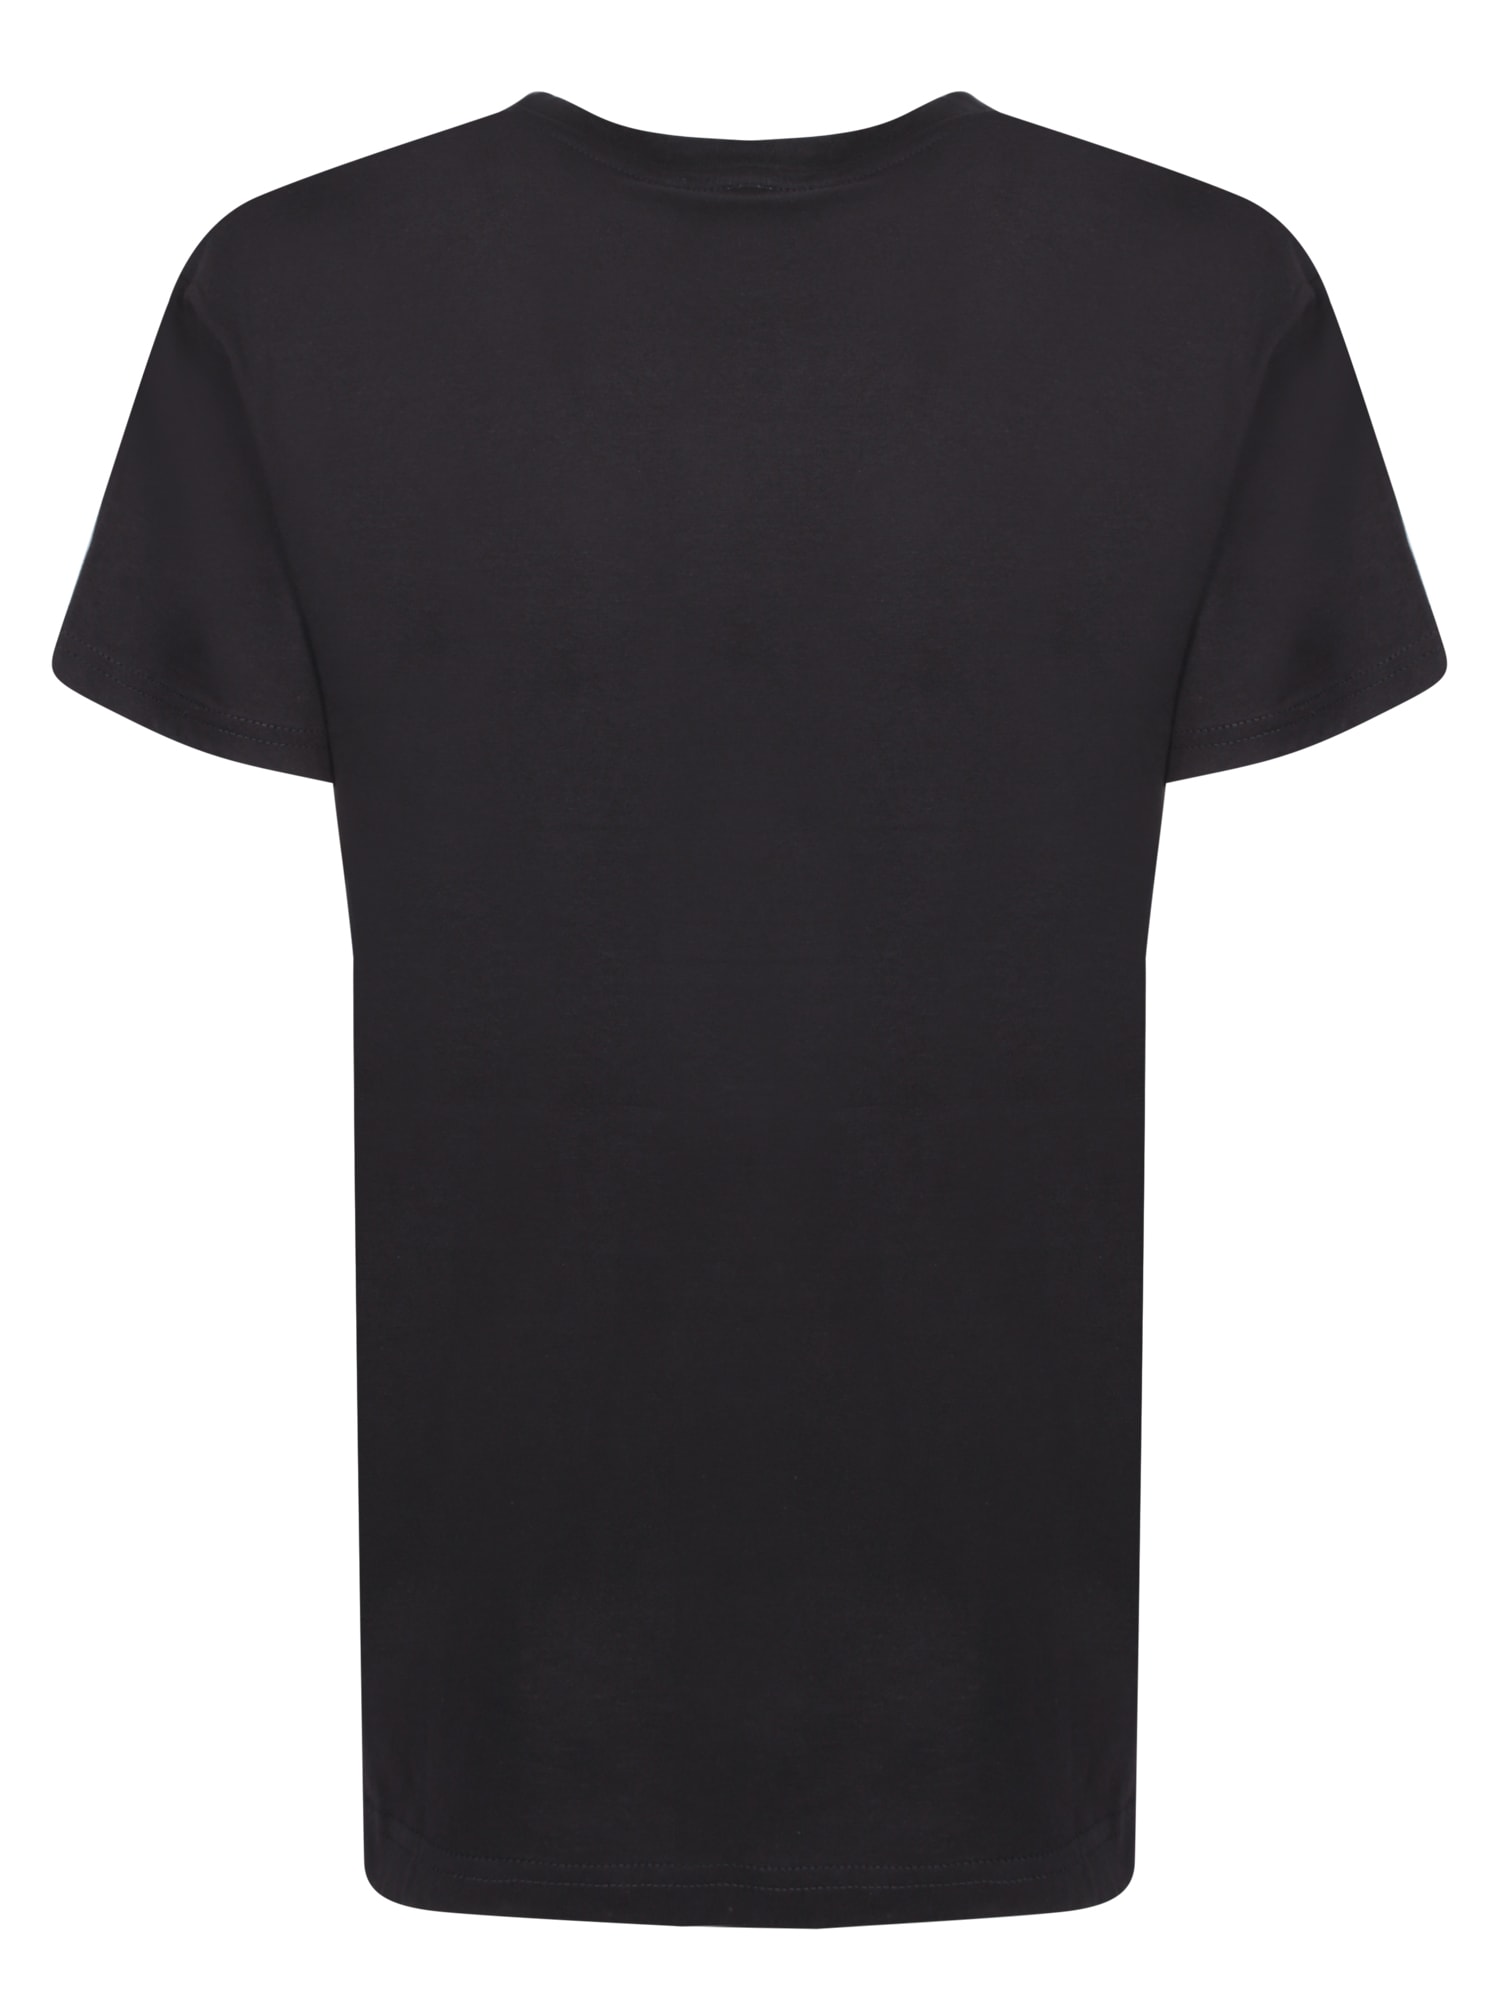 Shop Alessandro Enriquez Amore Black T-shirt